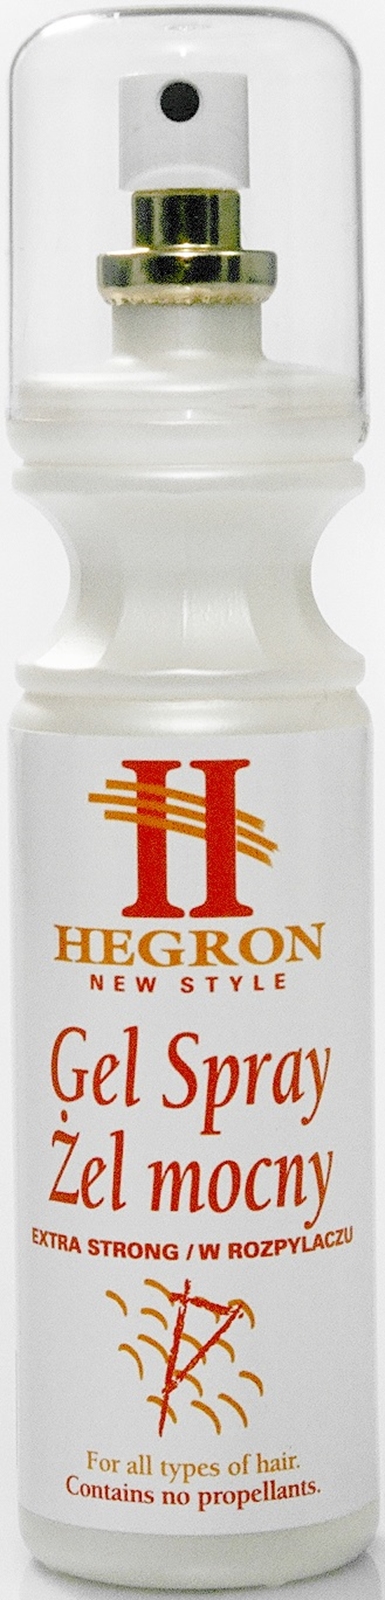 Hegron Gel Spray, żel do włosów mocny, spray 300ml